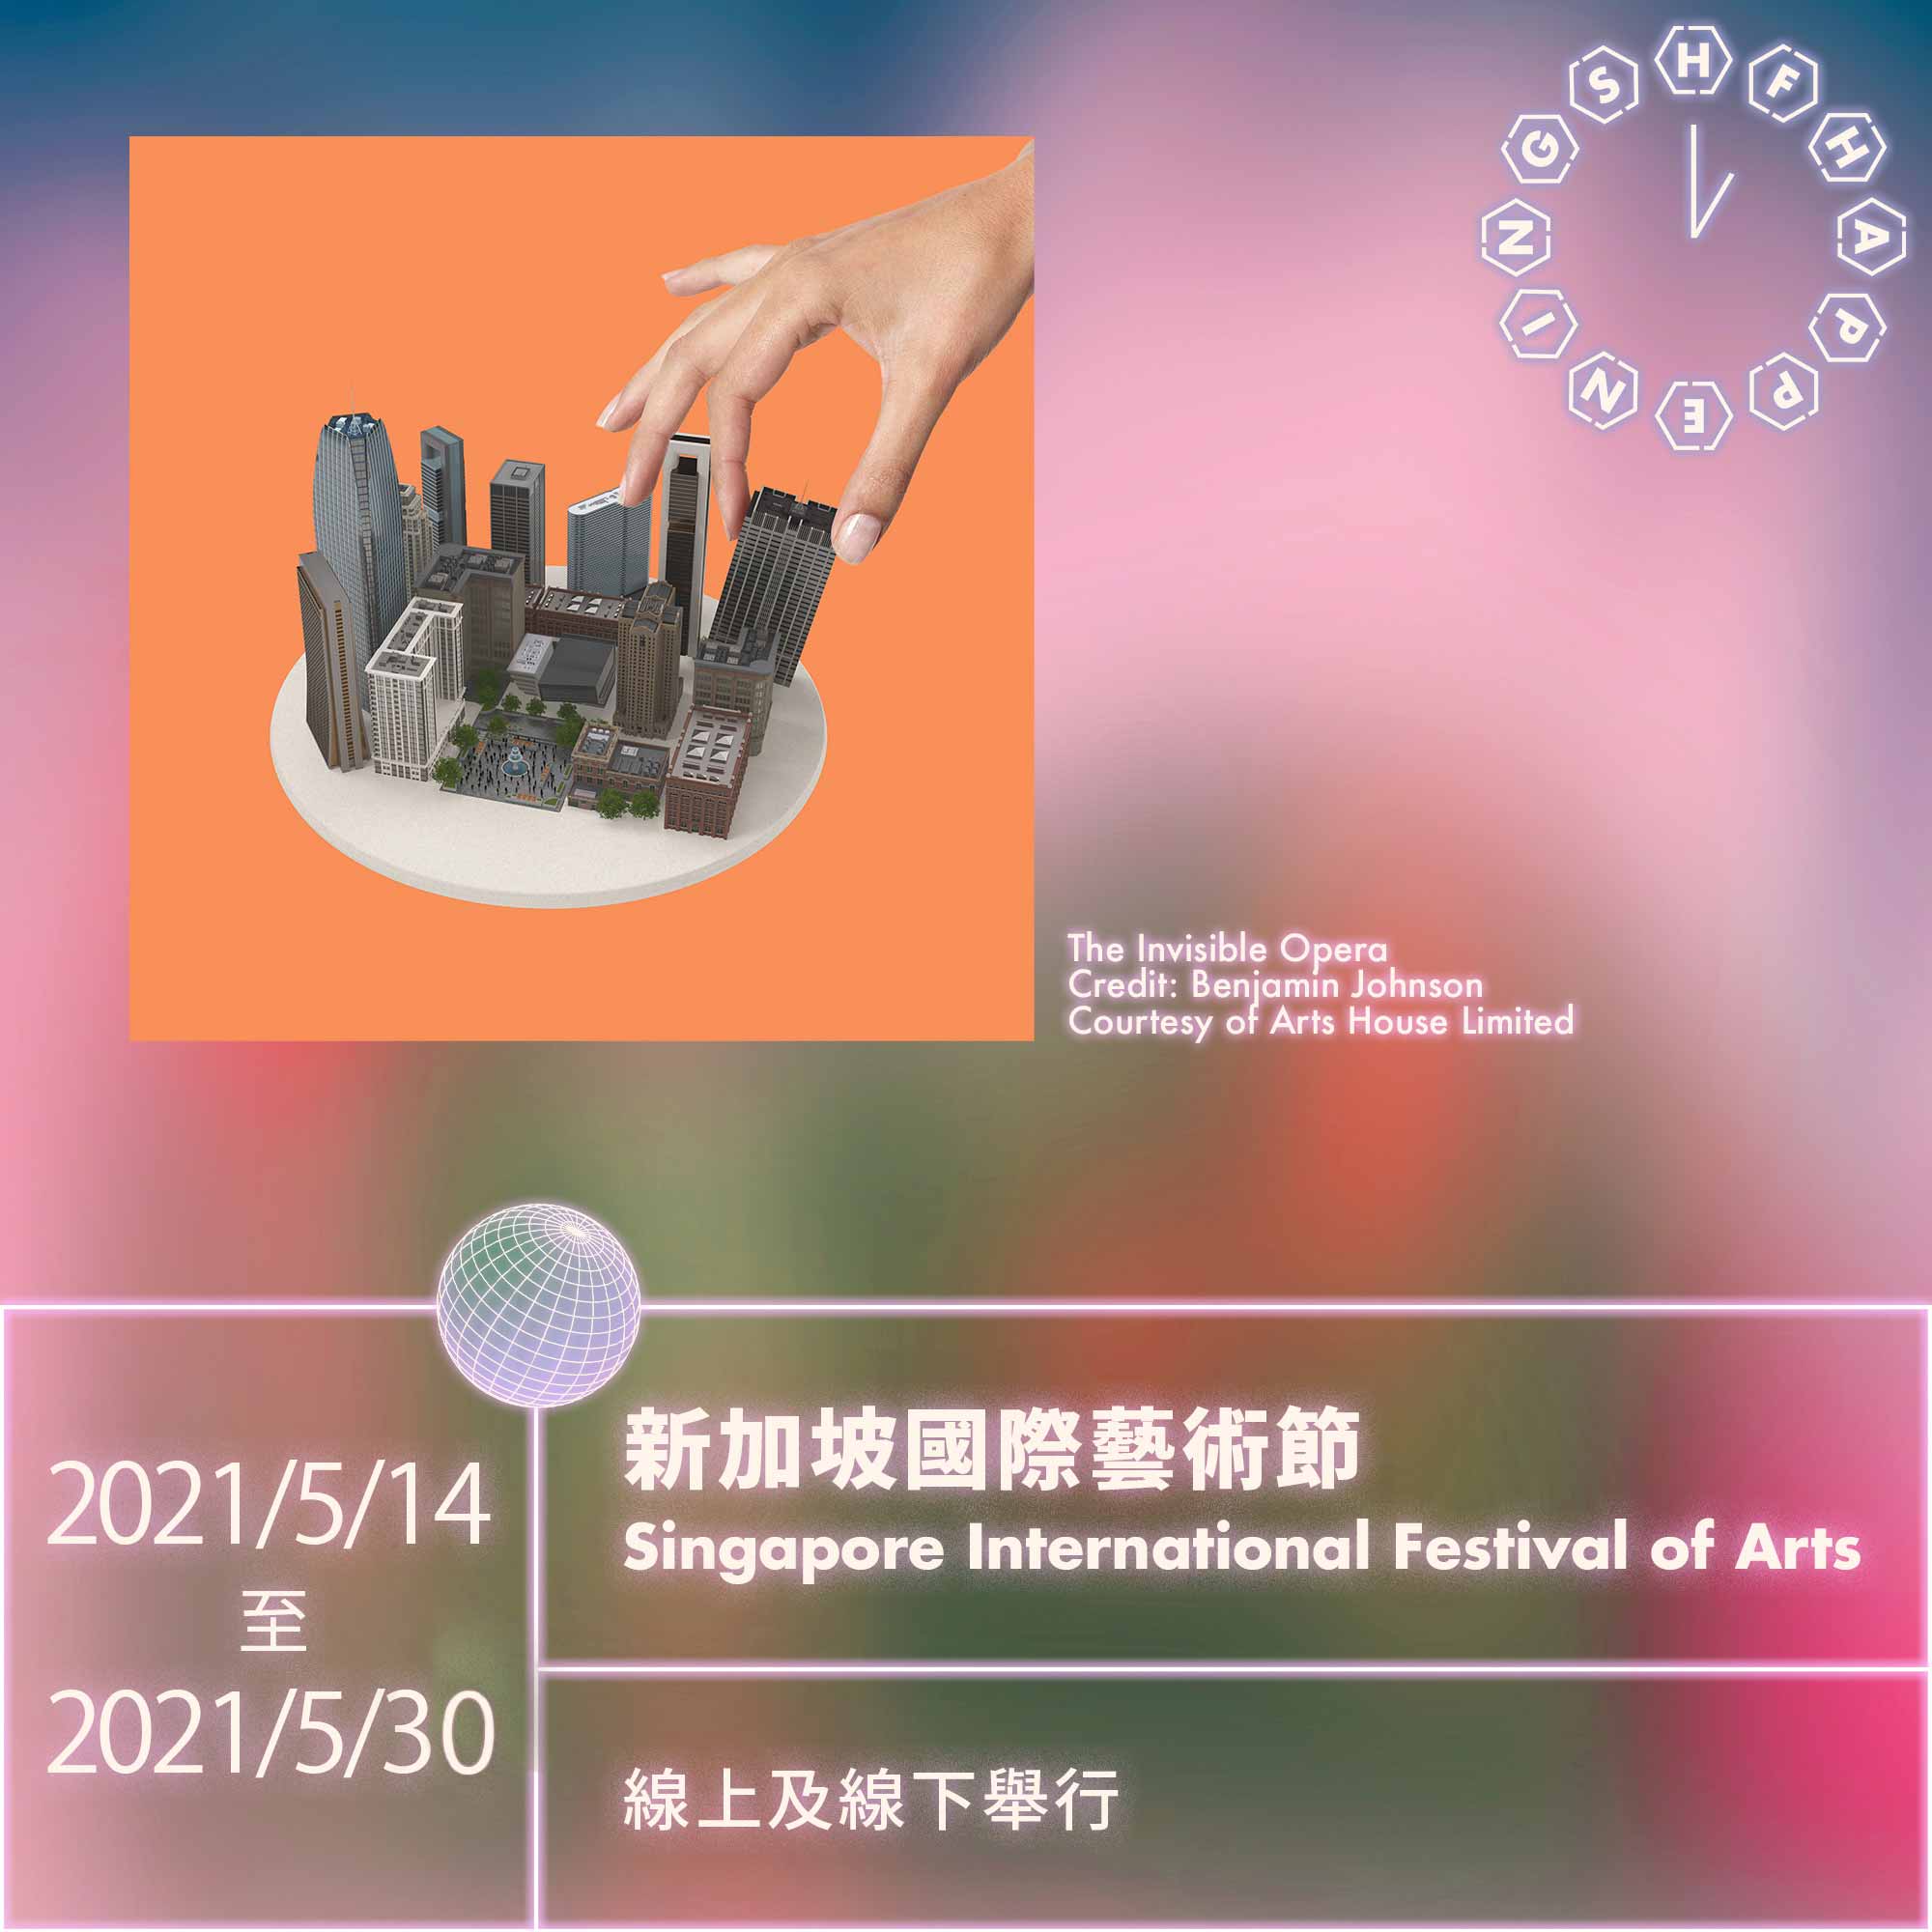 新加坡國際藝術節 Singapore International Festival of Arts SIFA